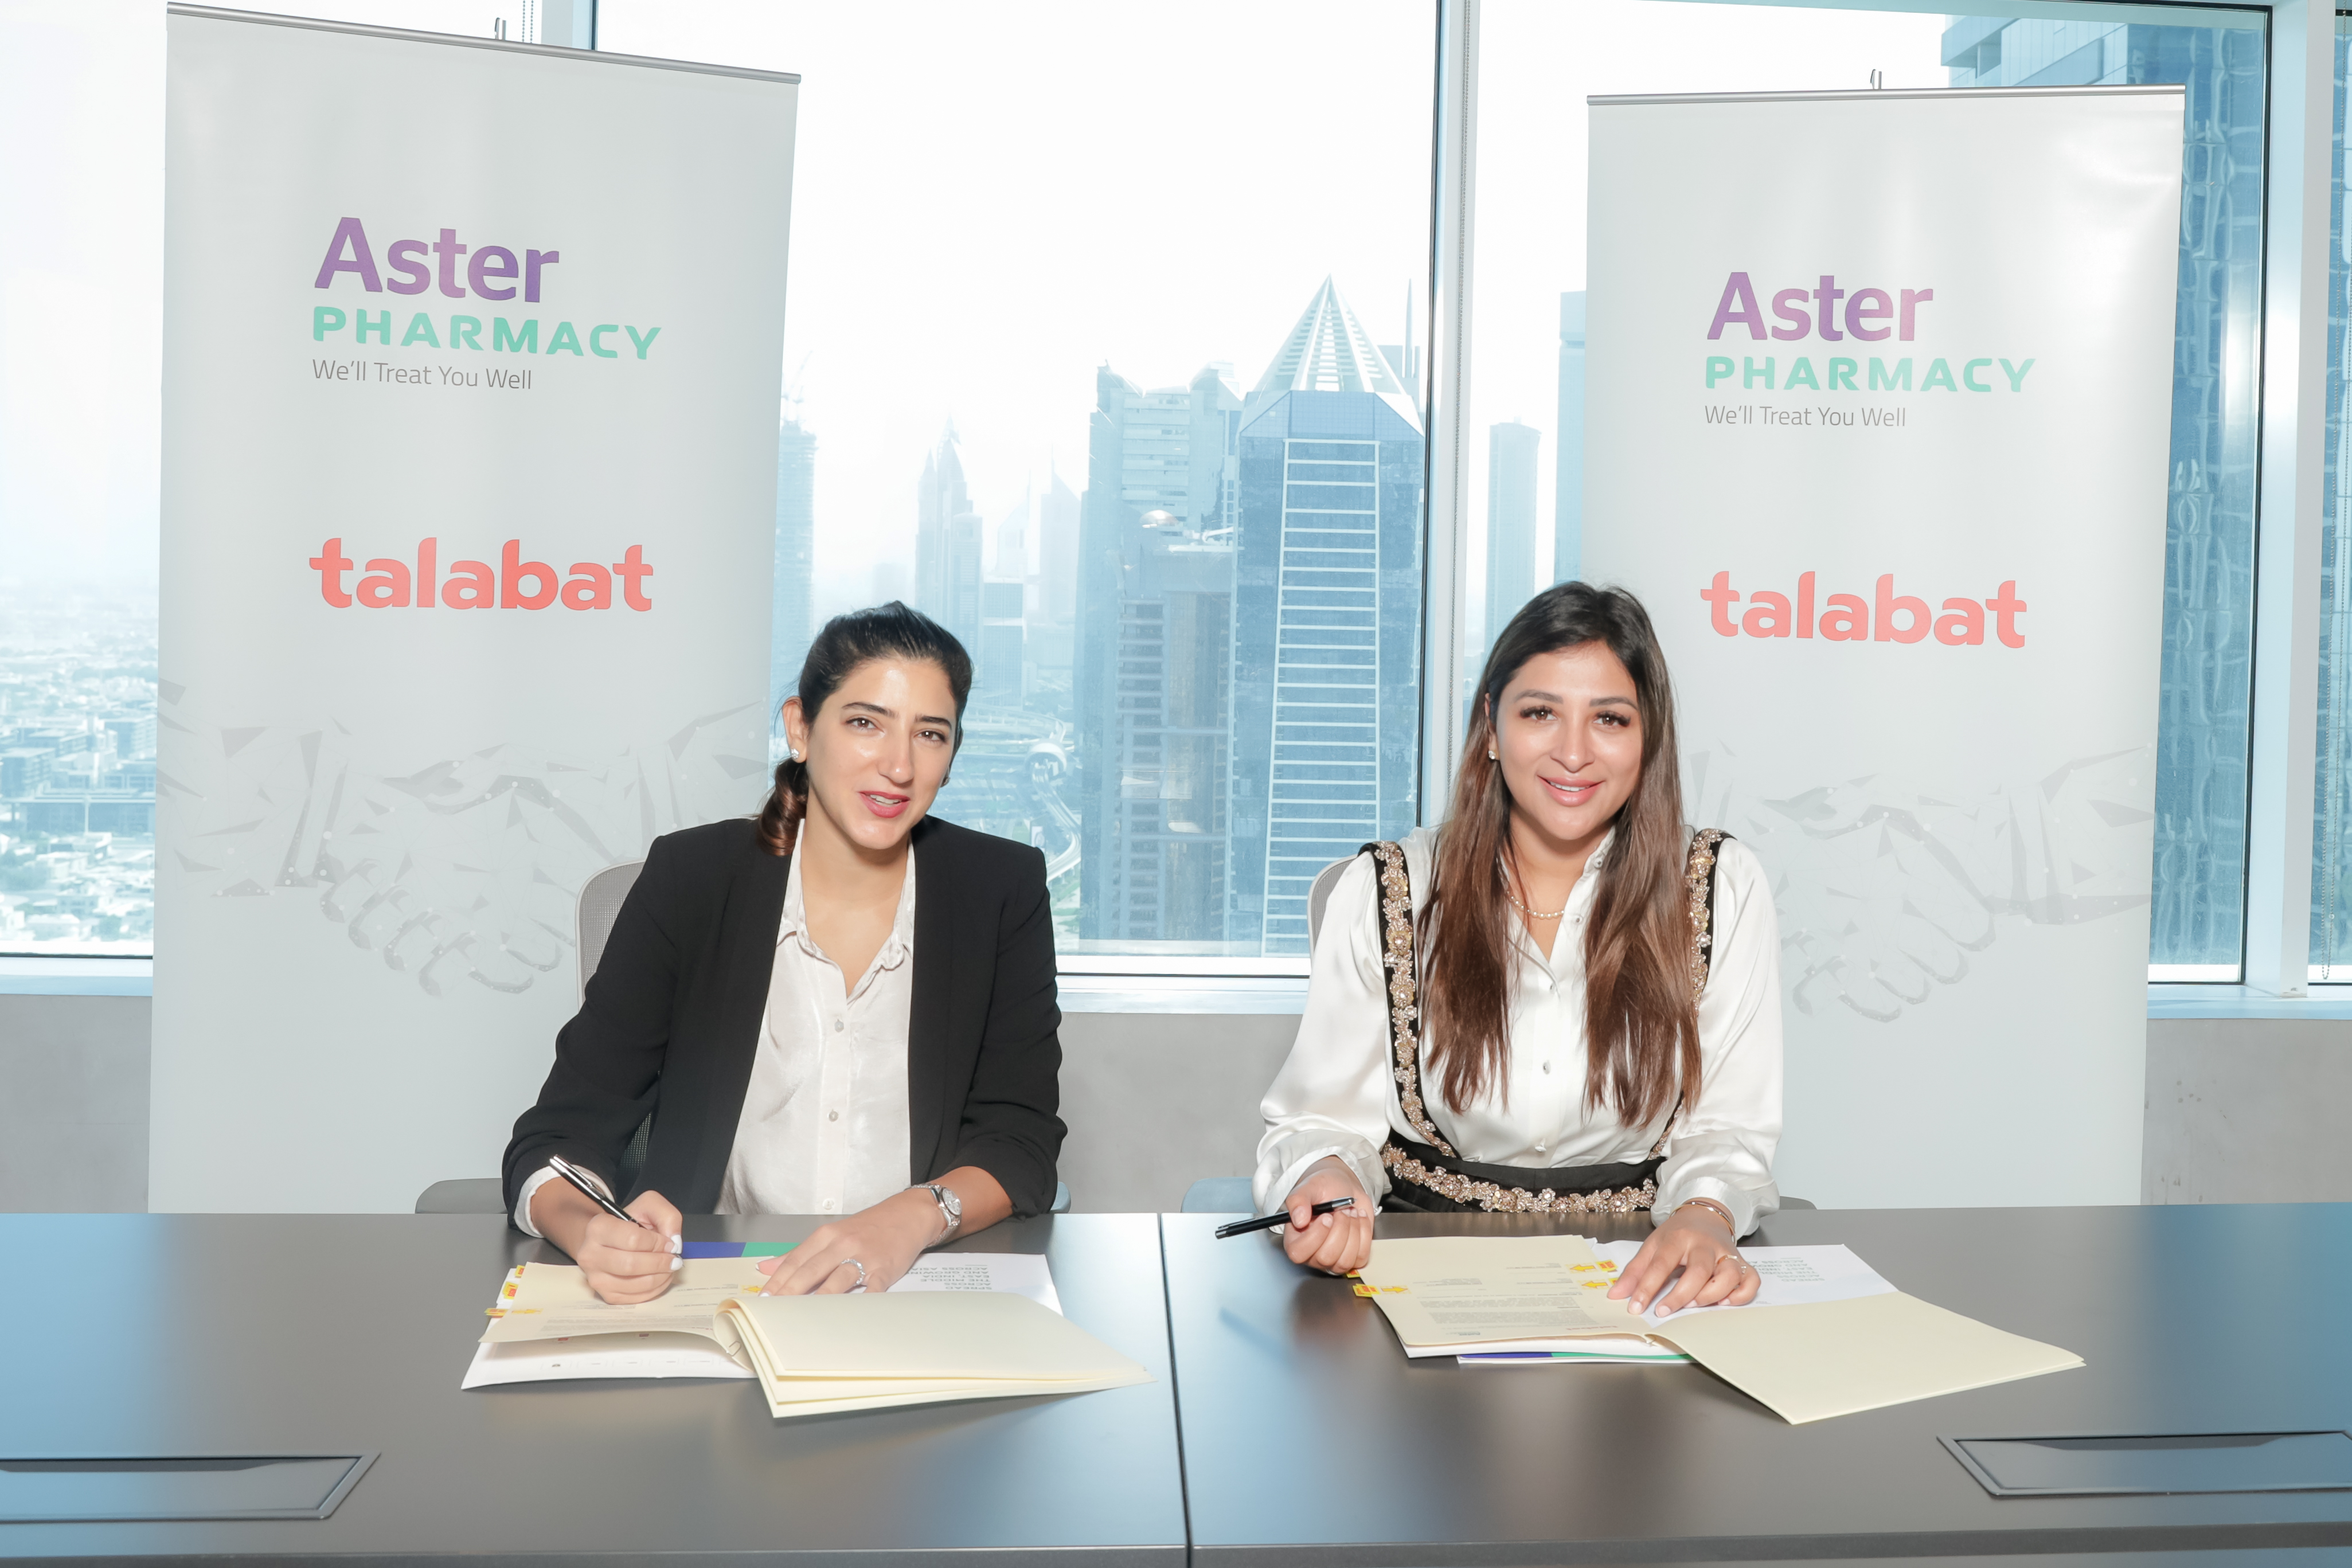 صيدلية أستر وشركة "طلبات الإمارات" توقّعان شراكة لتوصيل الأدوية الموصوفة للمرضى في الدولة